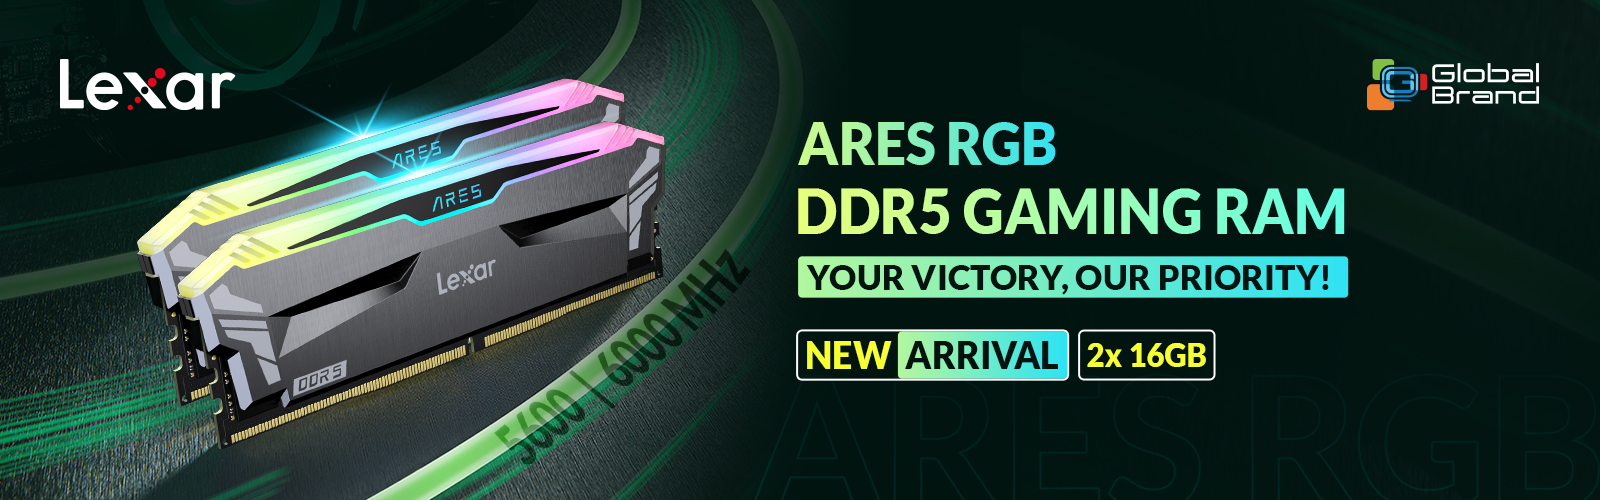 Lexar Ares RGB DDR5